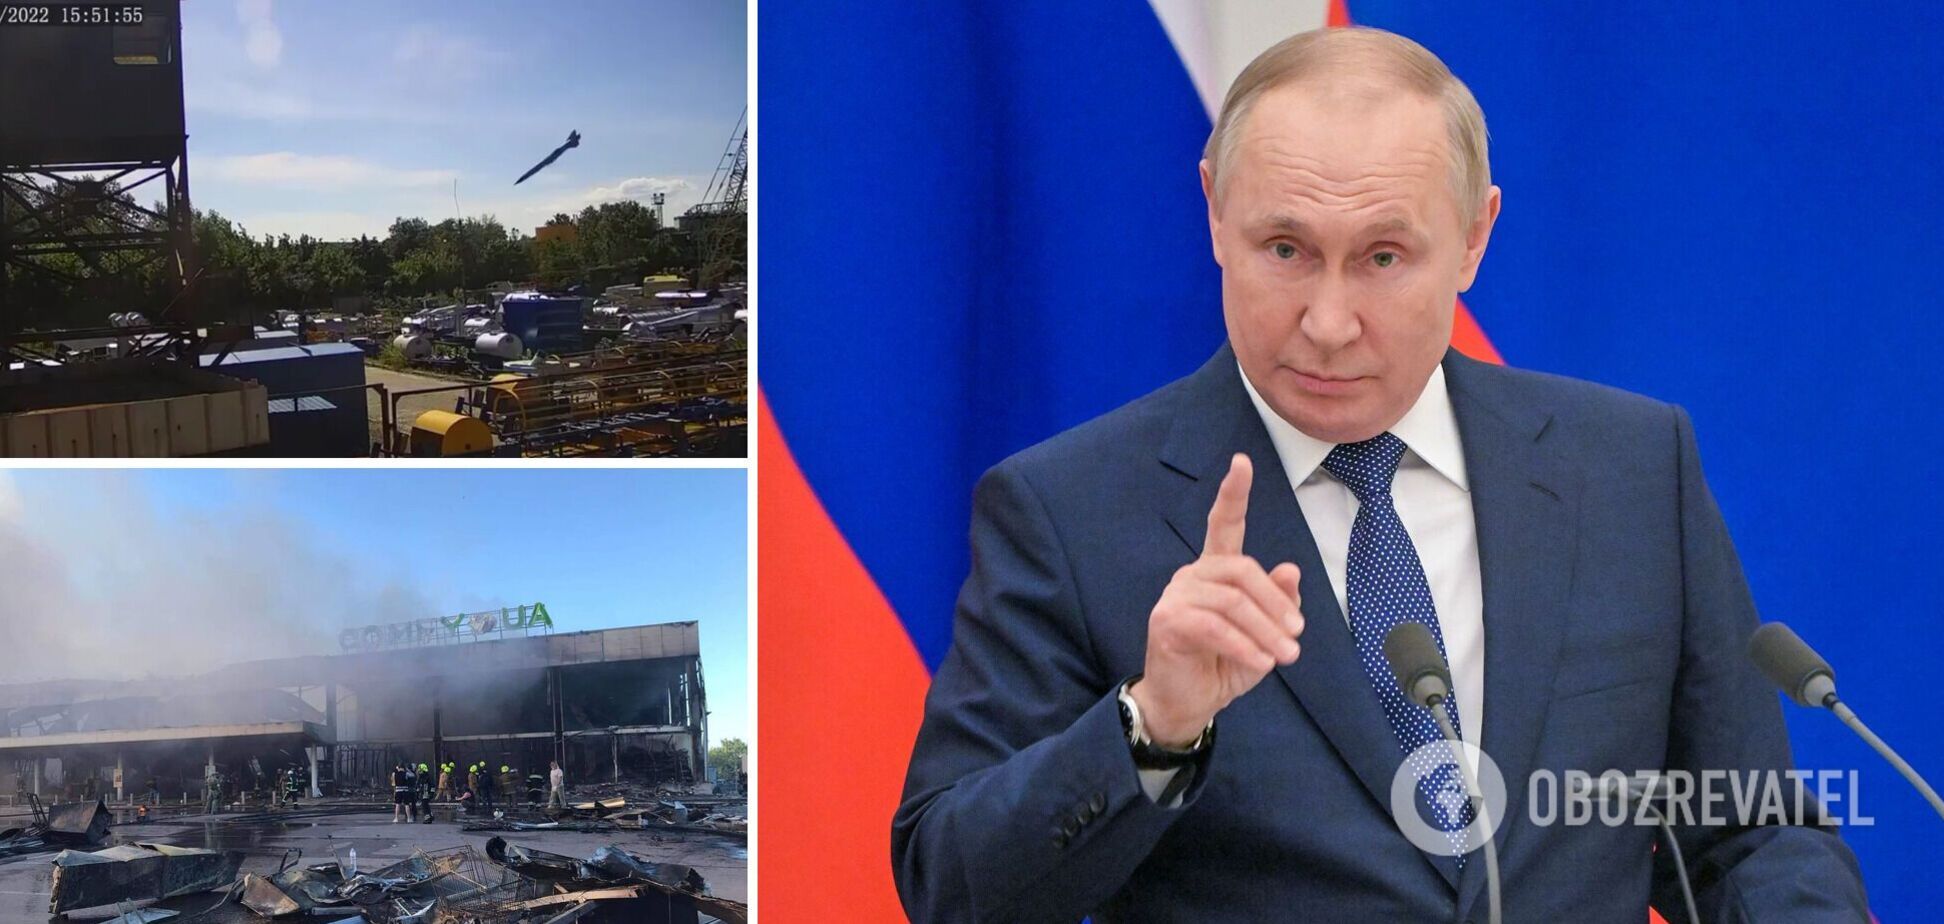 Путин: теракта в Кременчуге не было, армия РФ не бьет по гражданским объектам